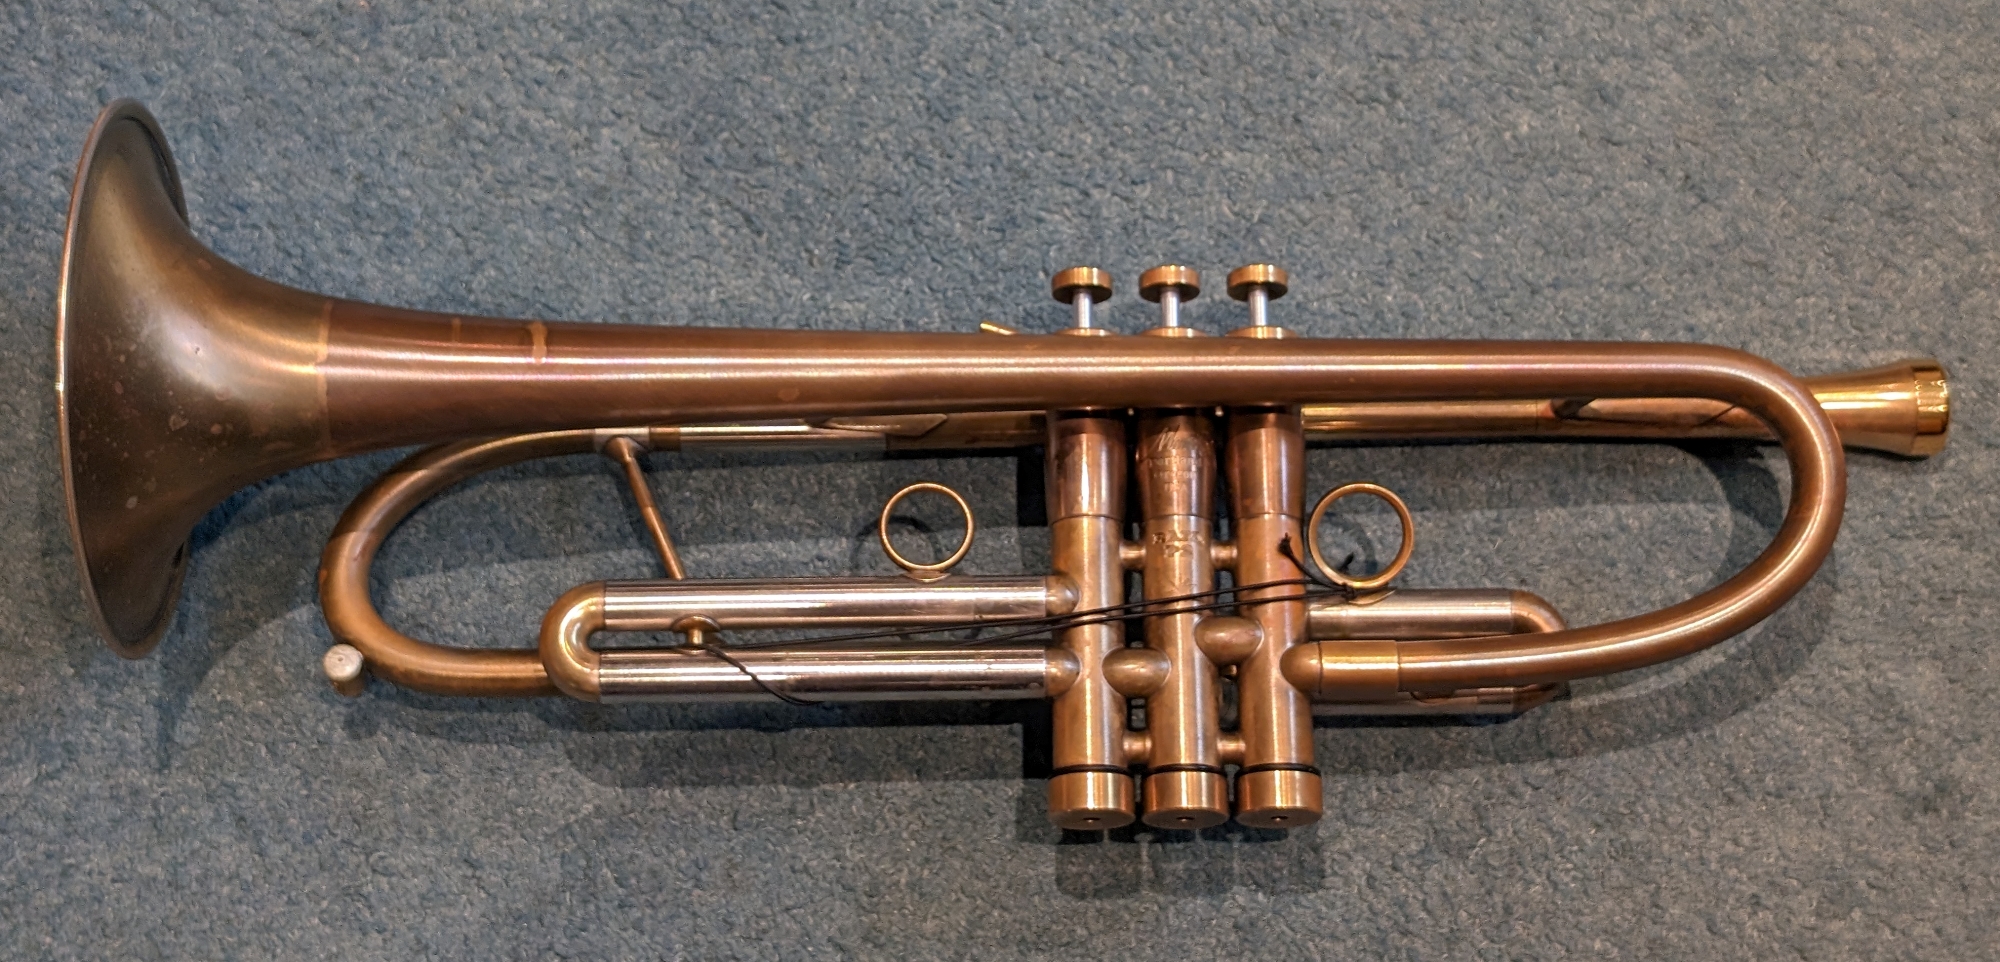 For sale, Monette P2 Trumpet